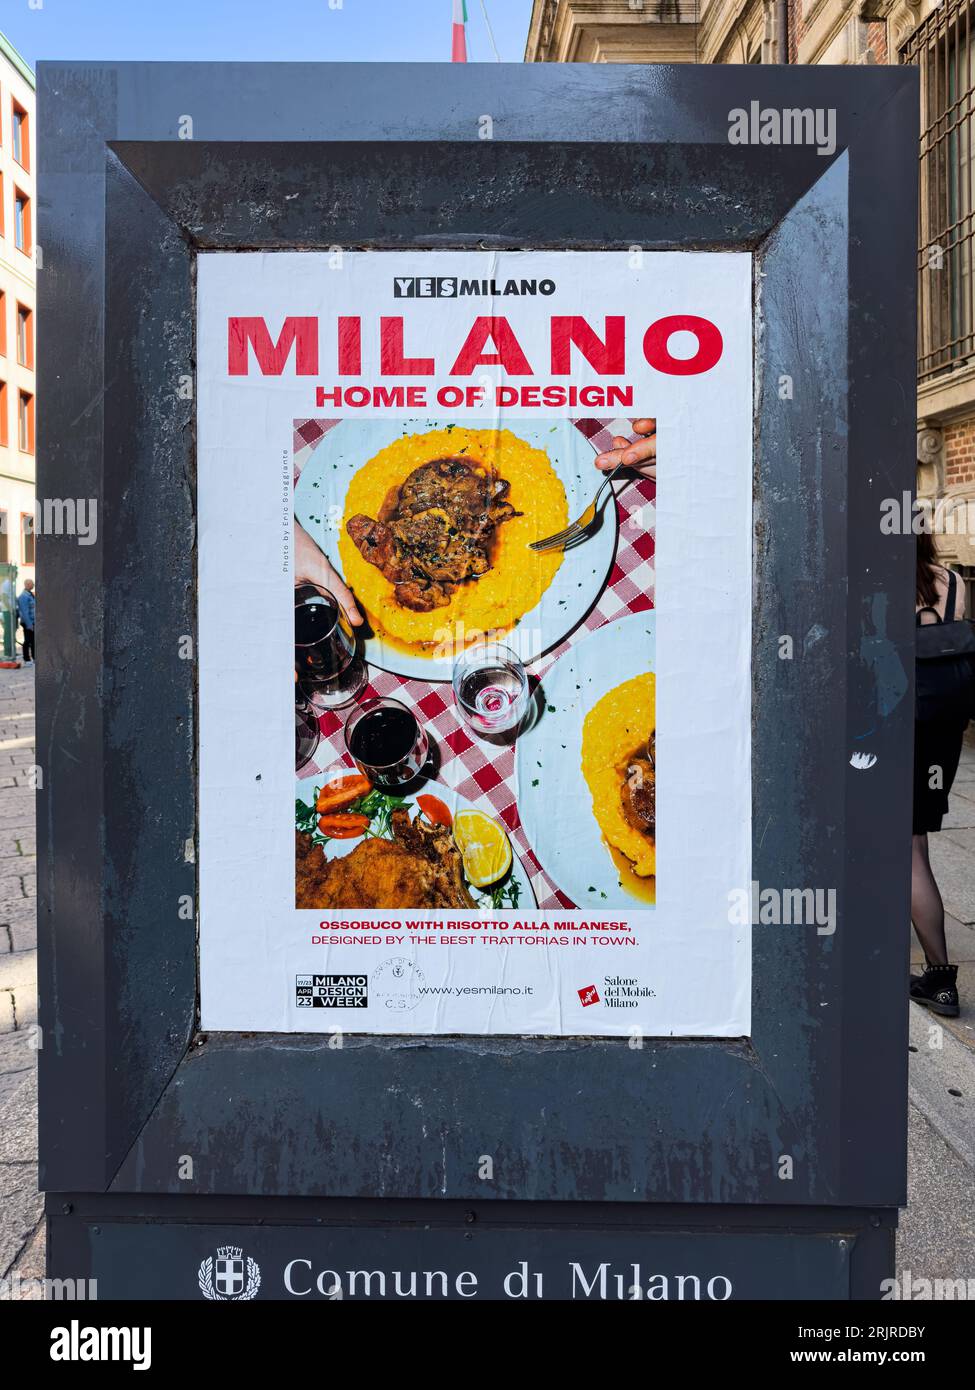 milan design week poster